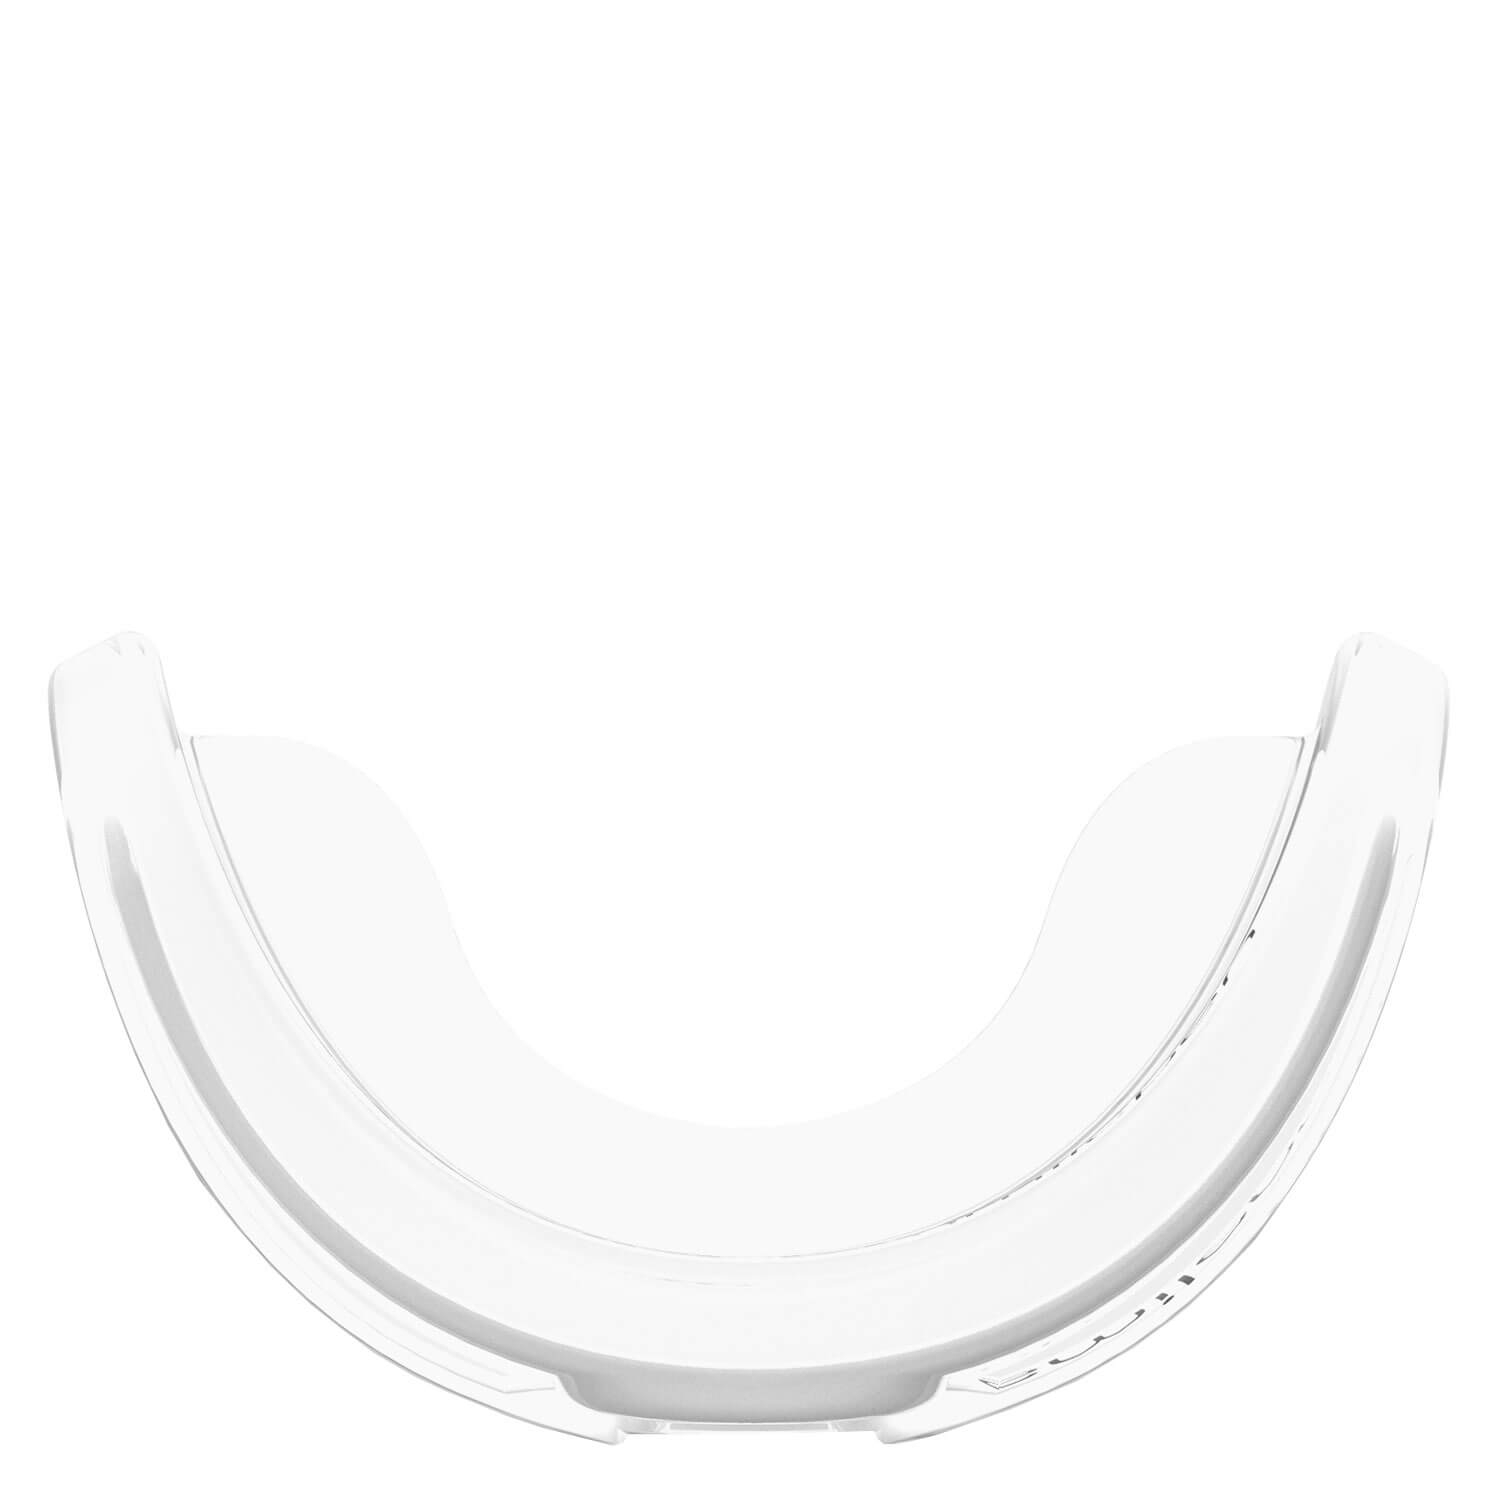 Produktbild von smilepen - Whitening Tray